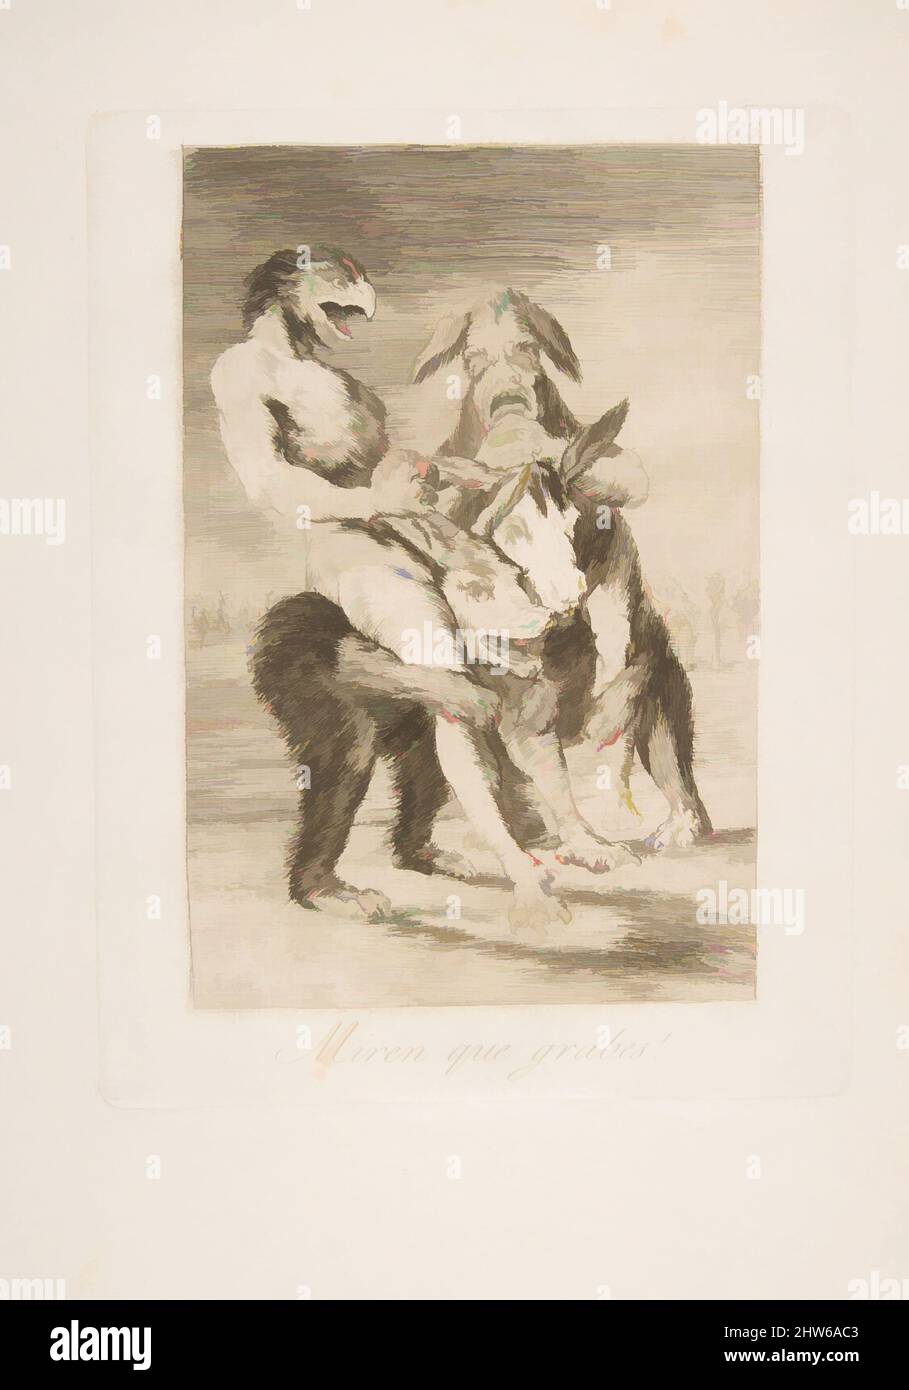 Arte ispirata al piatto 63 di 'Los Caprichos': Guarda quanto sono solenni! (MIREN que grabes!), 1799, acquaforte, acquatinta e punto secco, piastra: 8 5/16 x 6 5/16 poll. (21,1 x 16,1 cm), Prints, Goya (Francisco de Goya y Lucientes) (spagnolo, Fuendetodos 1746–1828 Bordeaux, opere classiche modernizzate da Artotop con un tuffo di modernità. Forme, colore e valore, impatto visivo accattivante sulle emozioni artistiche attraverso la libertà delle opere d'arte in modo contemporaneo. Un messaggio senza tempo che persegue una nuova direzione selvaggiamente creativa. Artisti che si rivolgono al supporto digitale e creano l'NFT Artotop Foto Stock